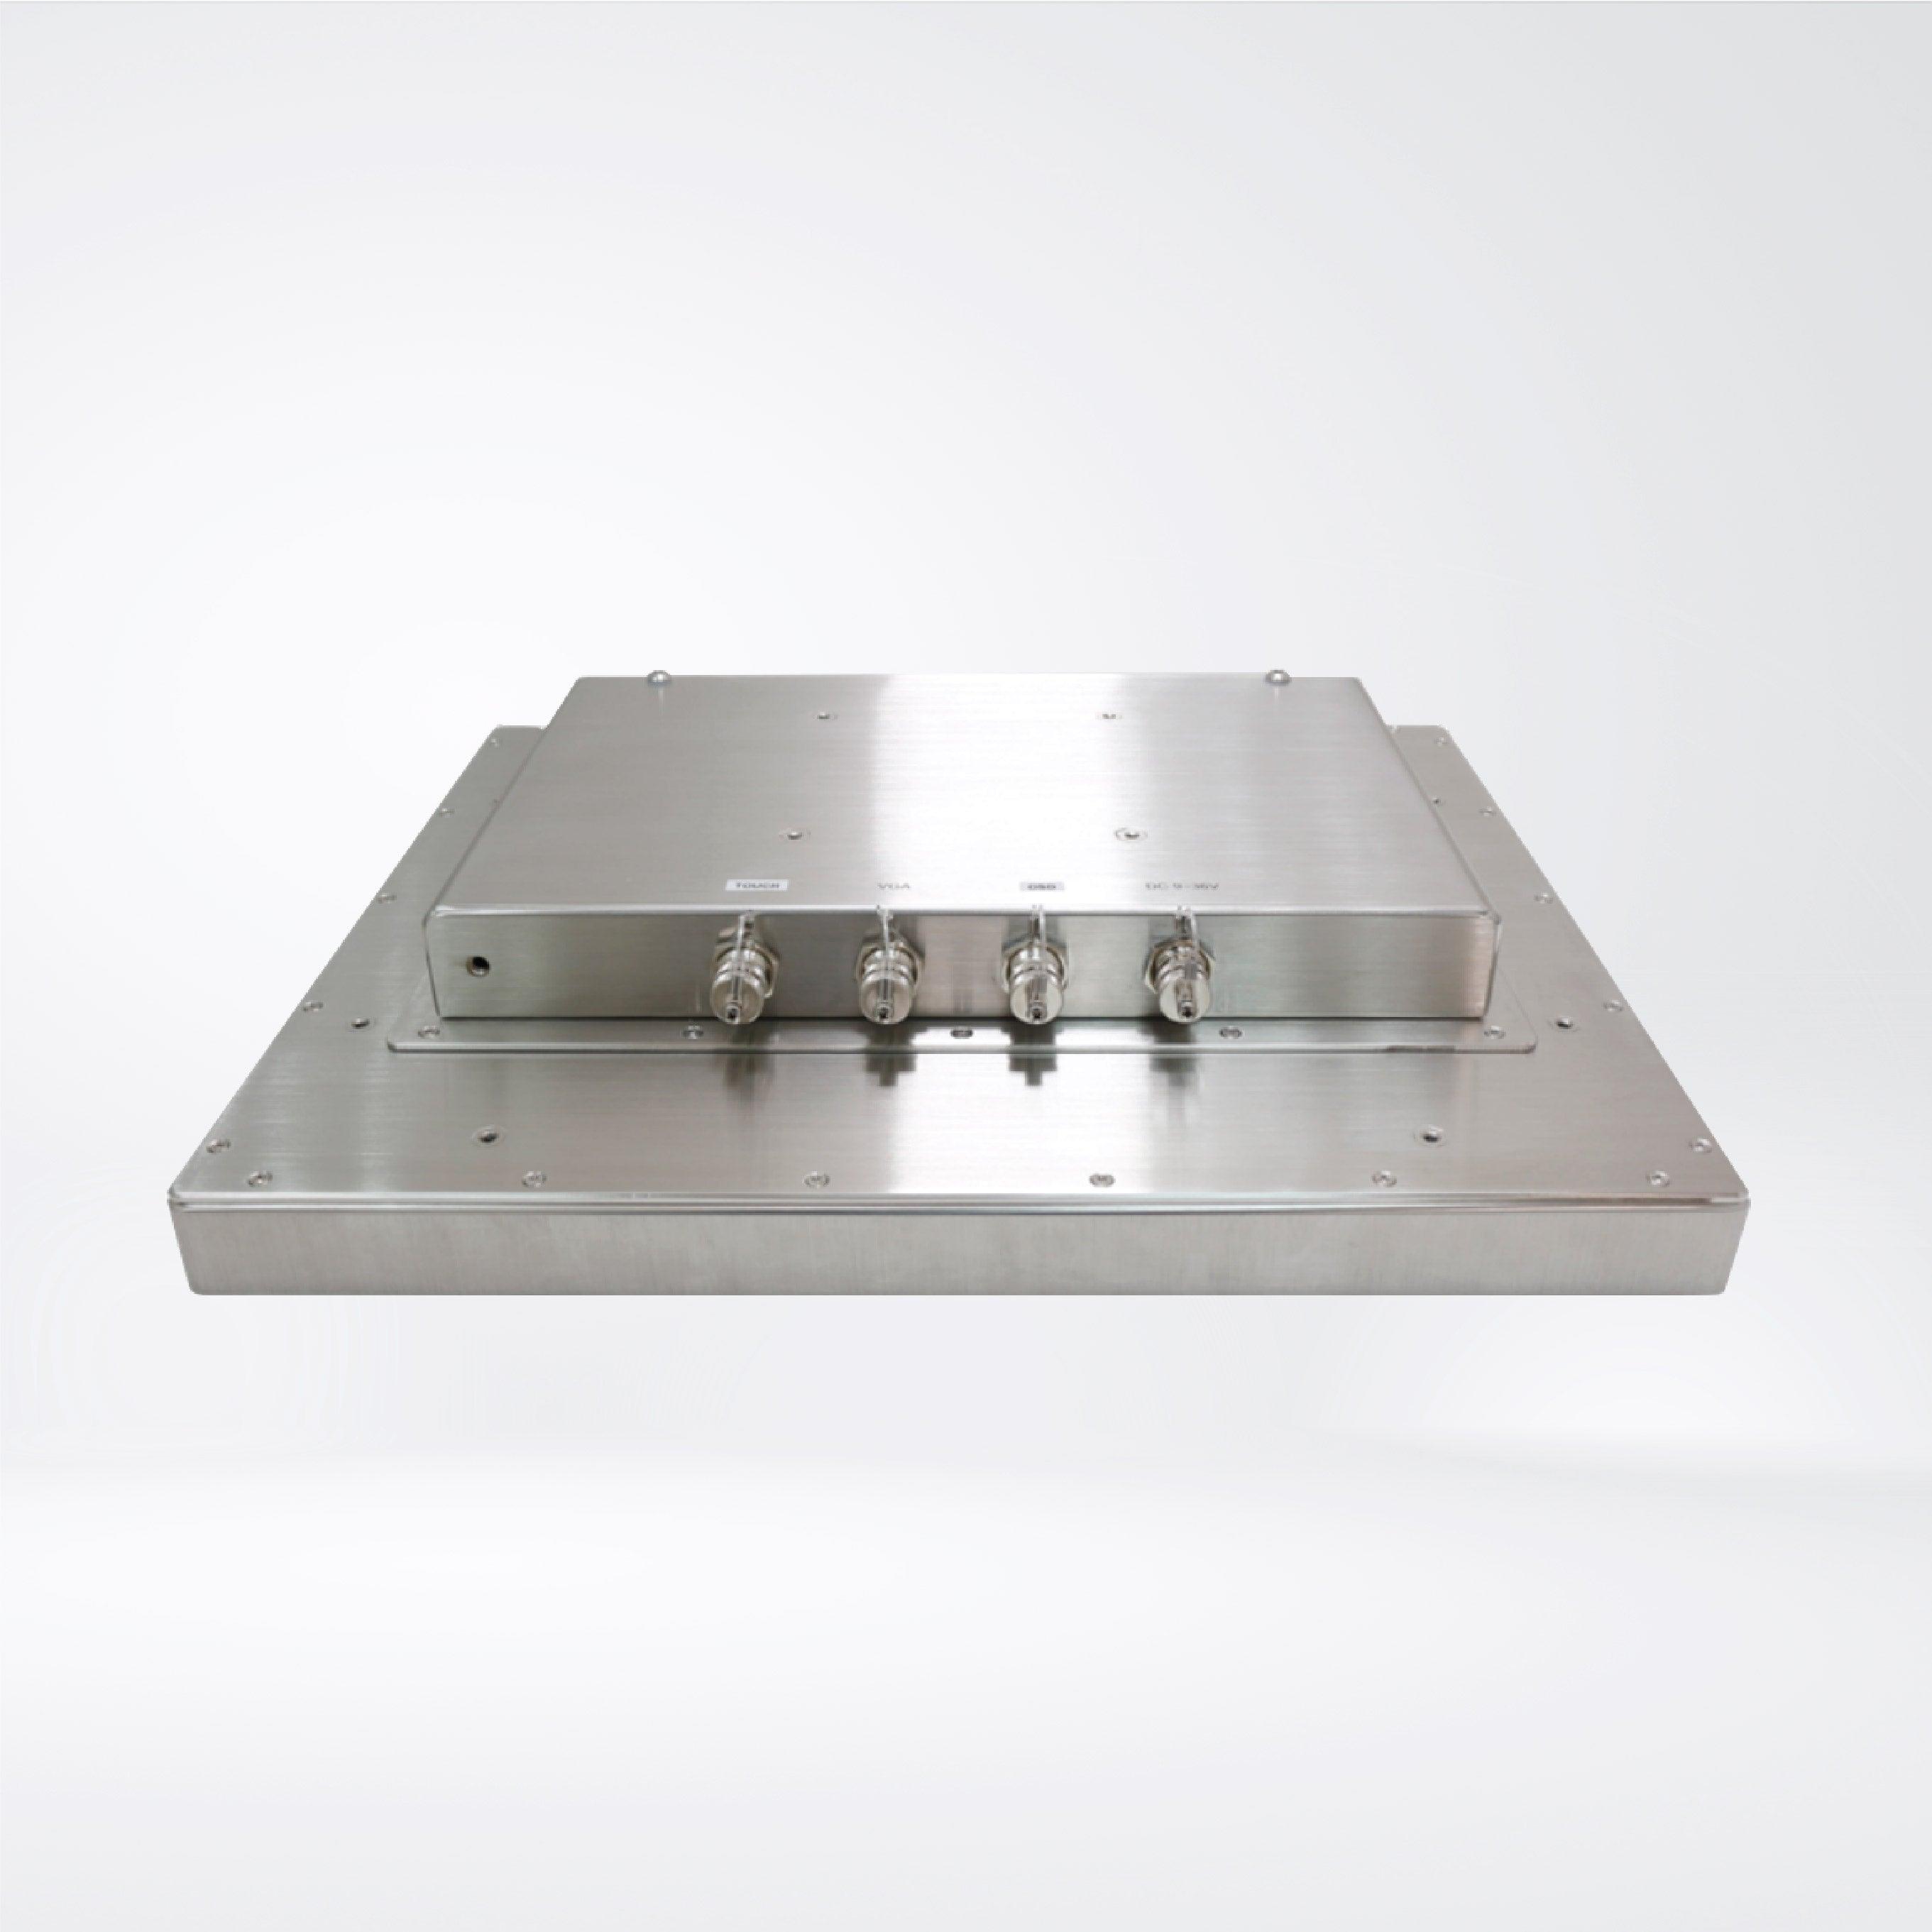 AEx-116P 15.6” ATEX Certified Stainless Steel Display - Riverplus